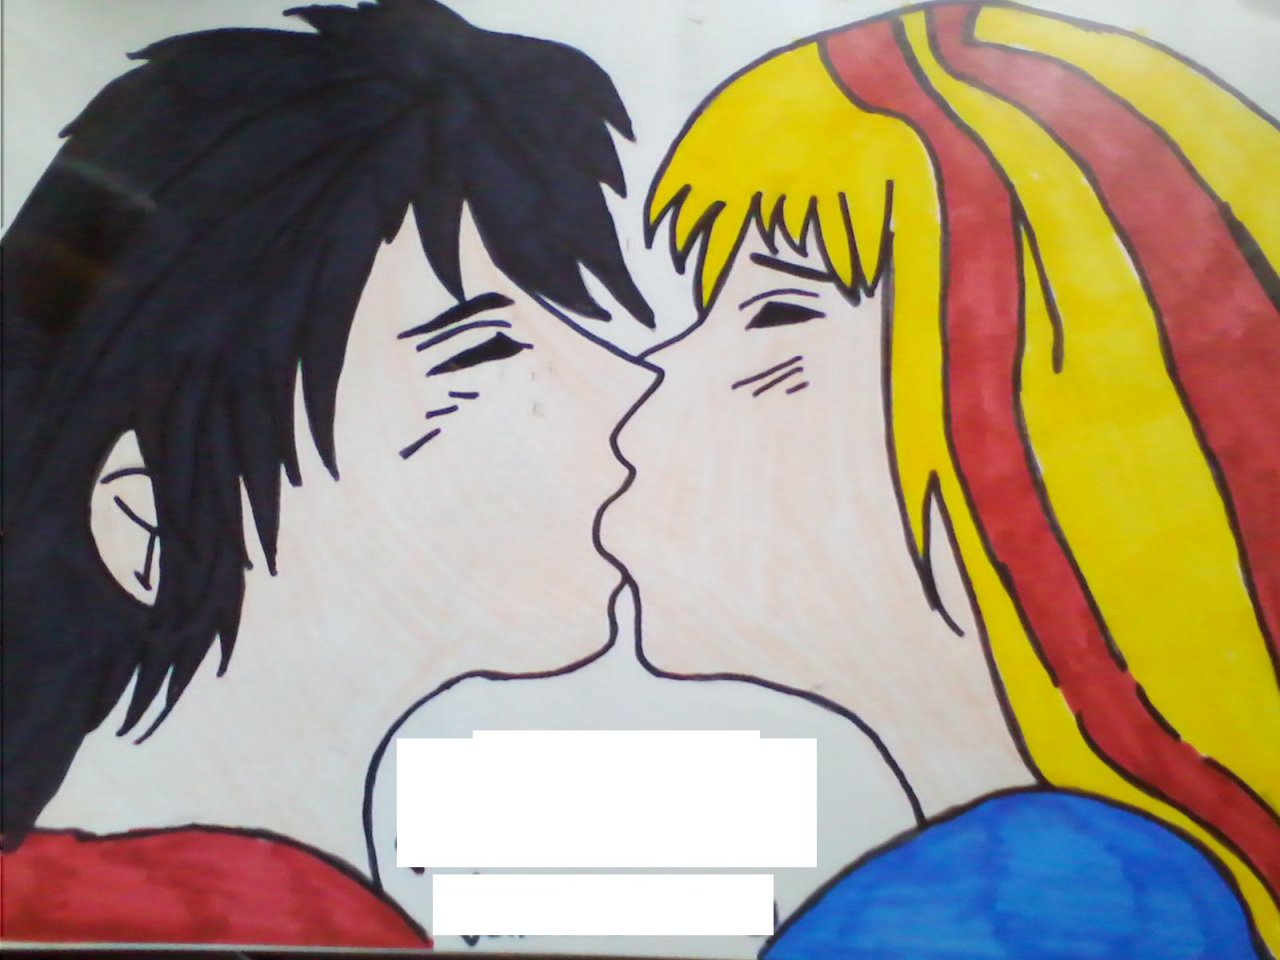 Kissing anime couple by Hikahi -- Fur Affinity [dot] net